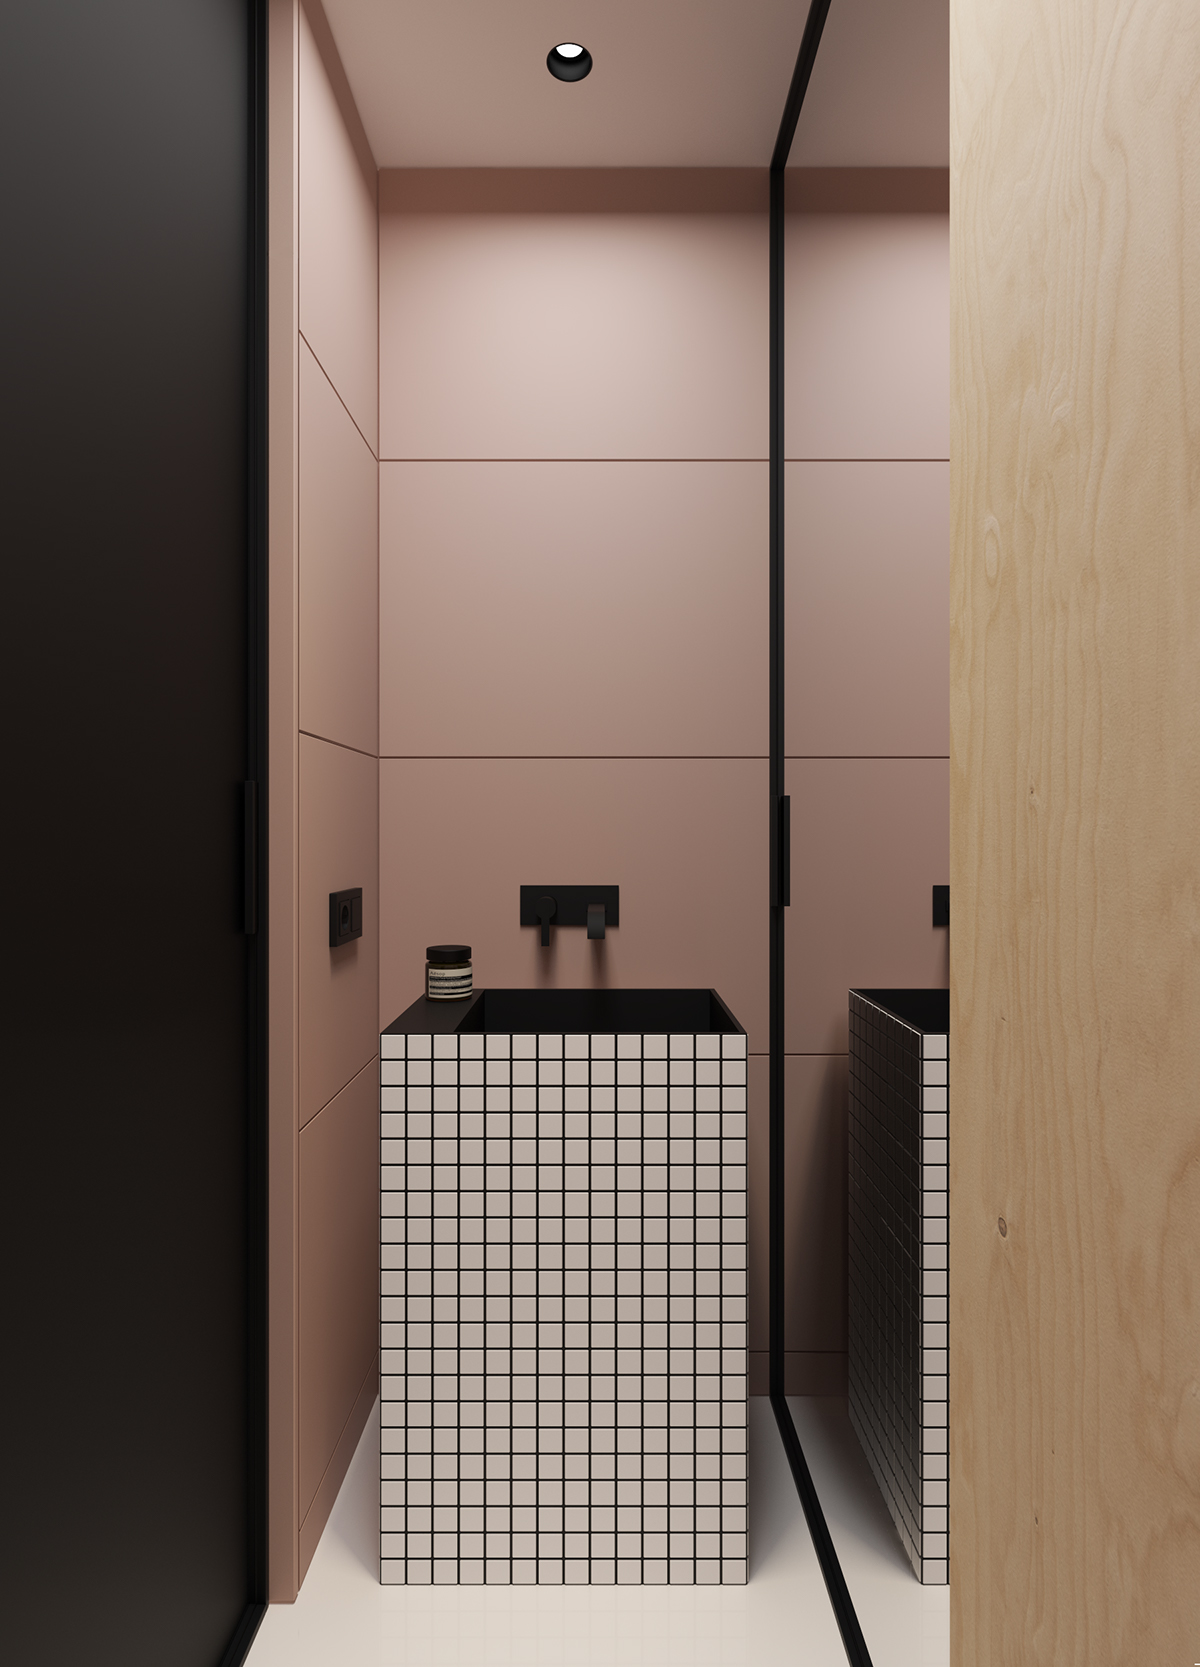 Stoere oud roze kleine badkamer